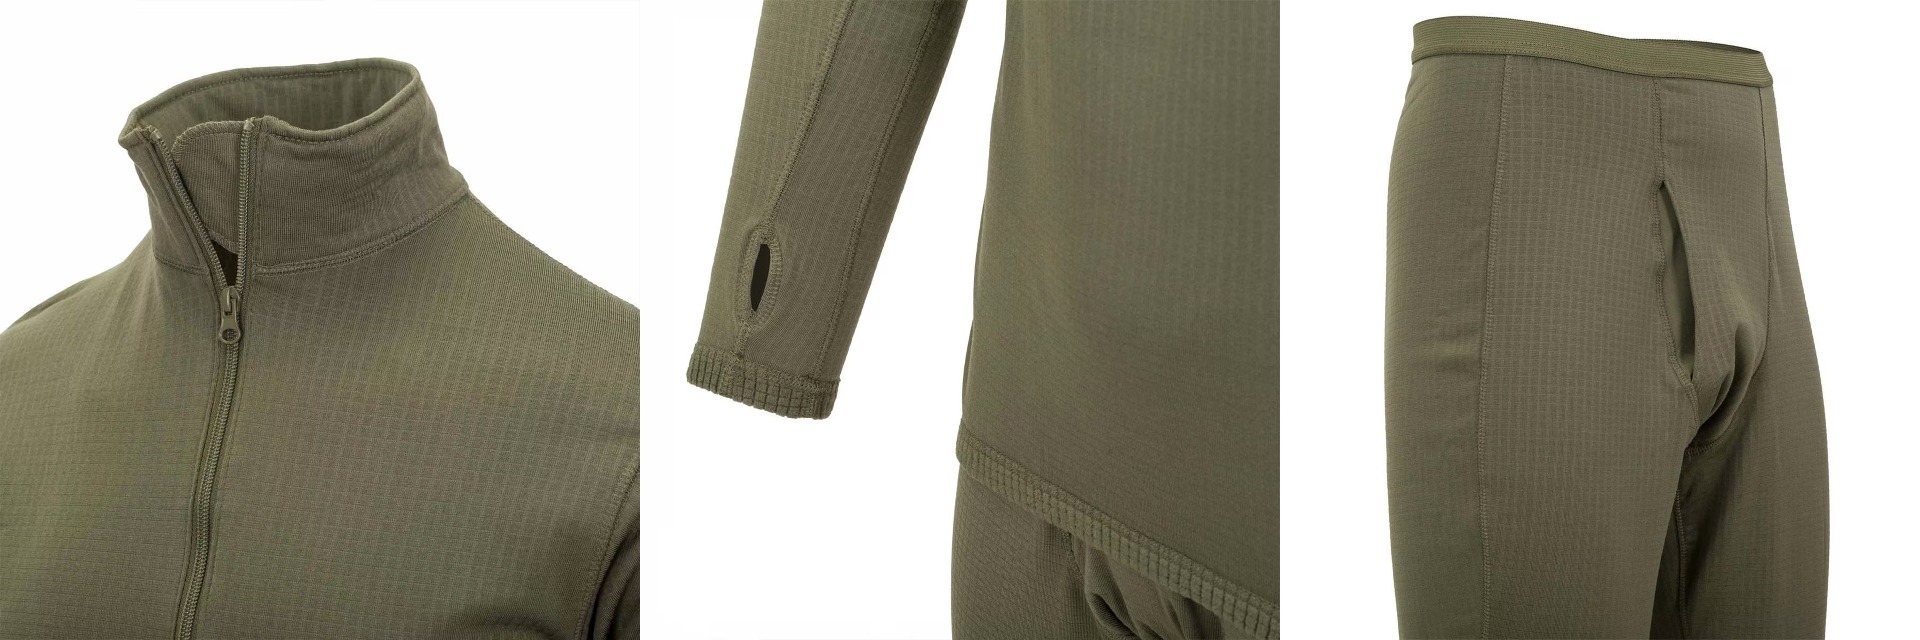 Kupite Helikon US LVL 2 termo perilo set v olive green barvi za toplo in udobno nošenje pri vojaških športih in aktivnostih na prostem. Kvalitetna in funkcionalna vojaška oblačila.